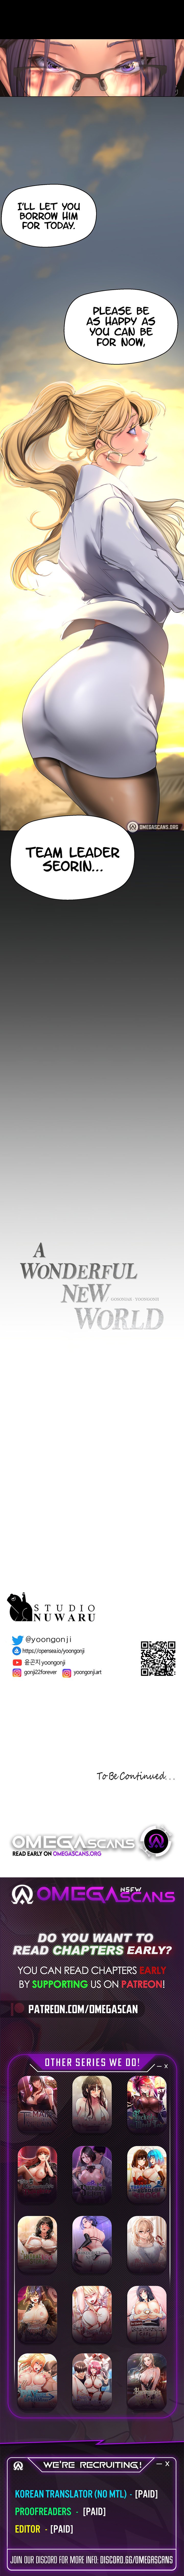 a-wonderful-new-world-chap-202-9